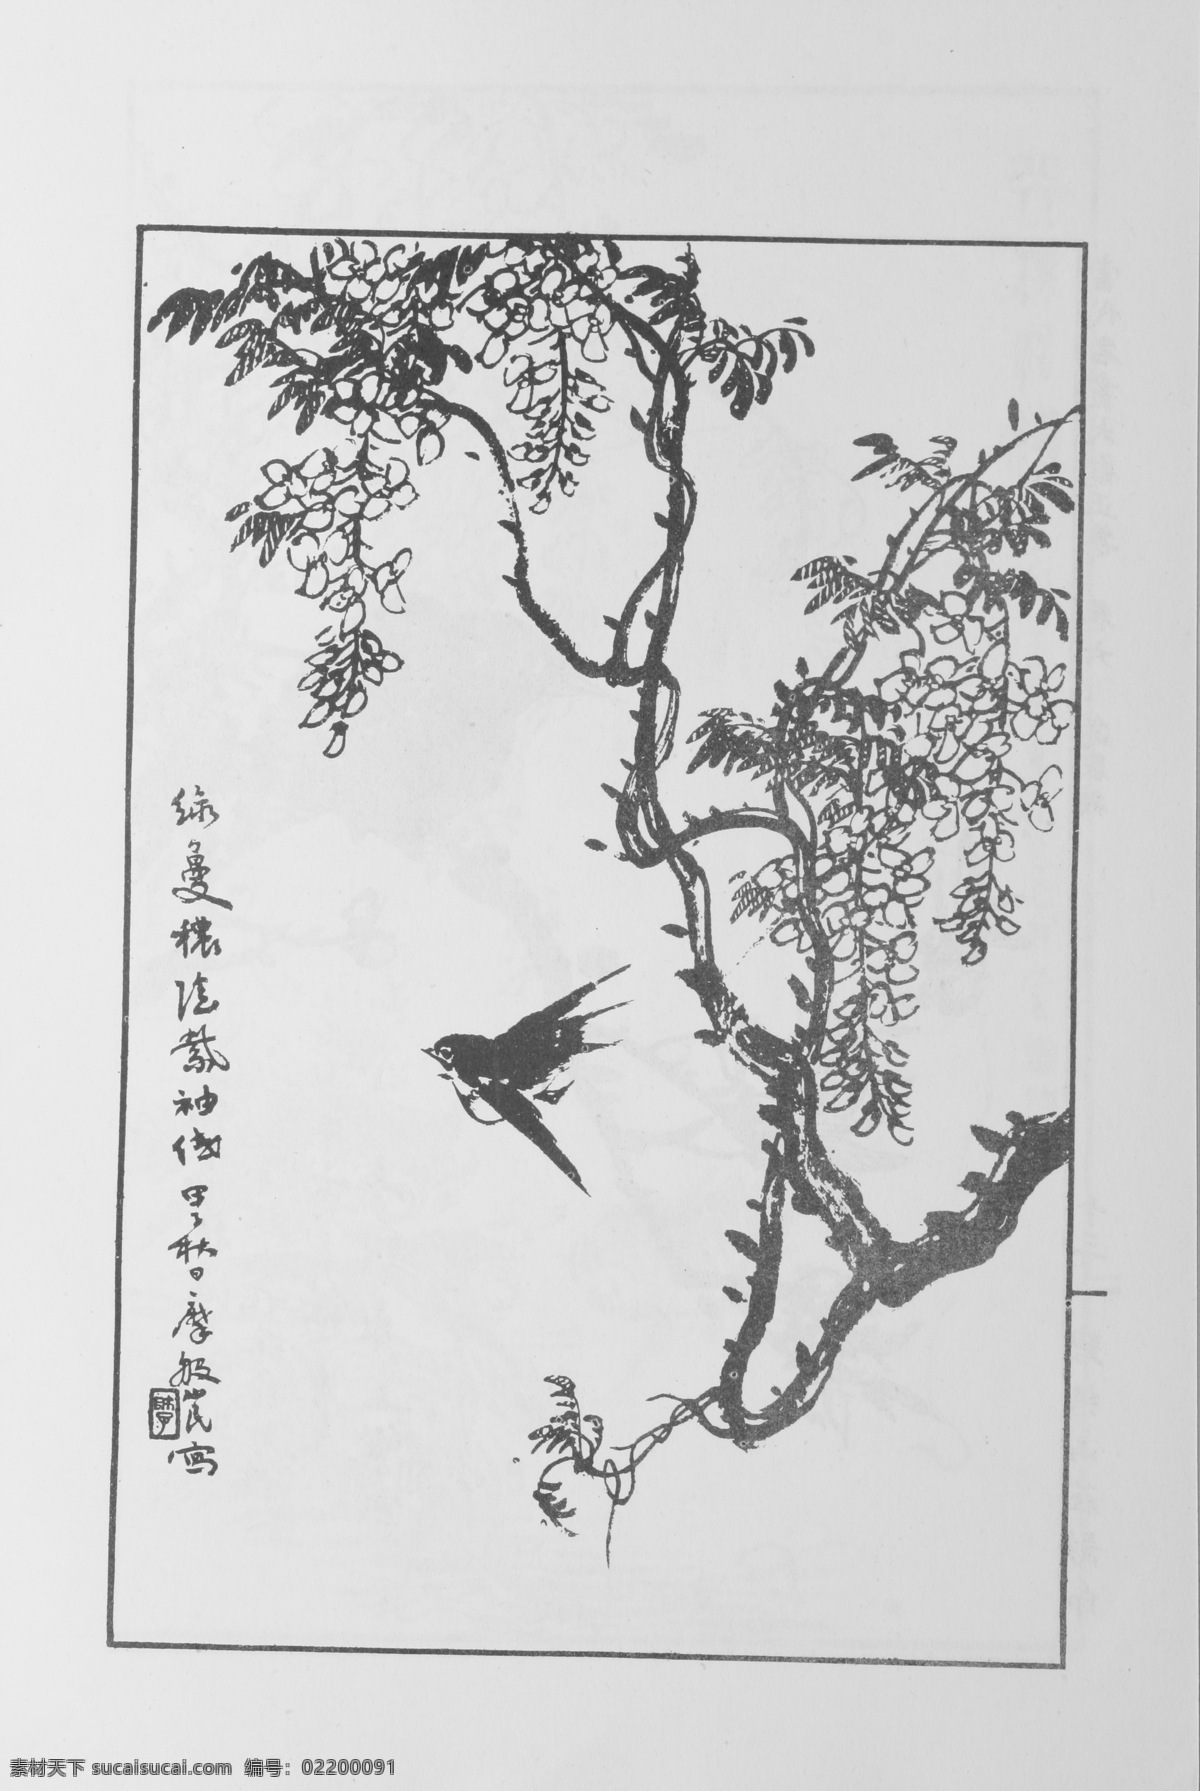 鸟兽画 中国画 当代 名画 大观 正 集 设计素材 花鸟画篇 中国画篇 书画美术 白色